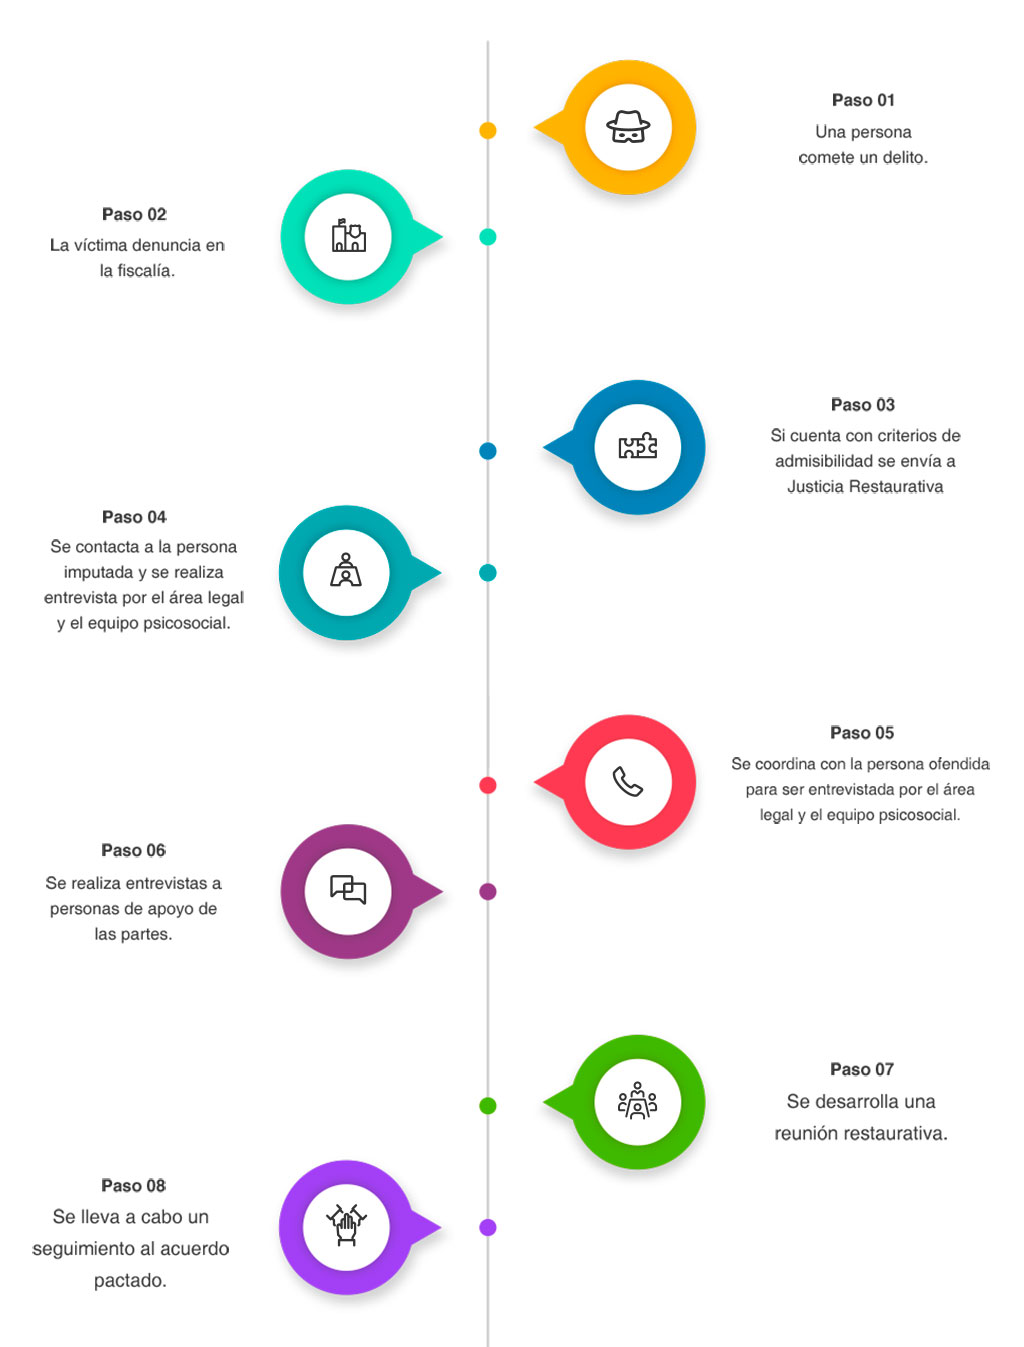 Infografía sobre Los ocho pasos a seguir de un Trámite de Justicia Restaurativa Penal